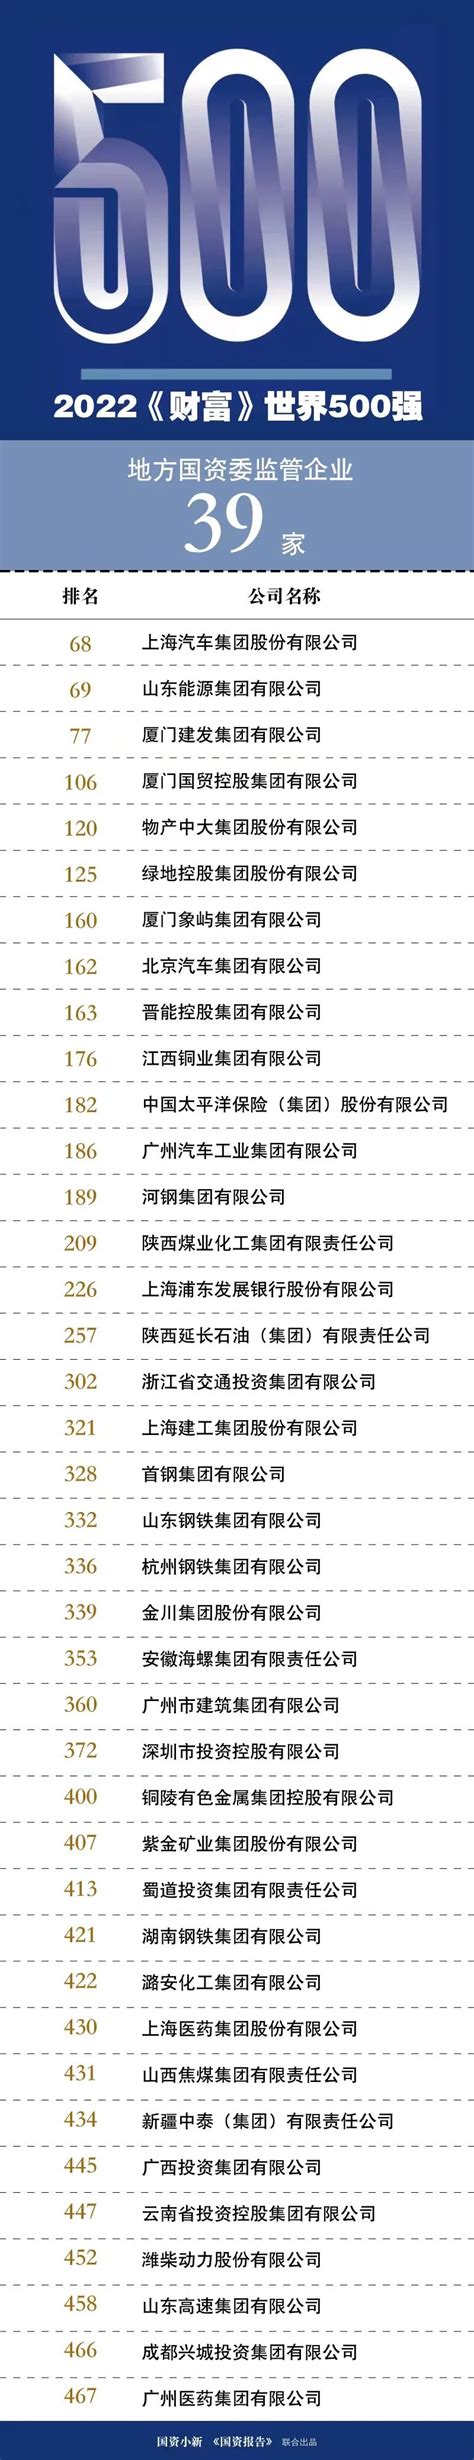 2022年胡润中国500强--Top10 光伏公司 - CMPE 2022艾邦第五届5G加工暨精密陶瓷展览会